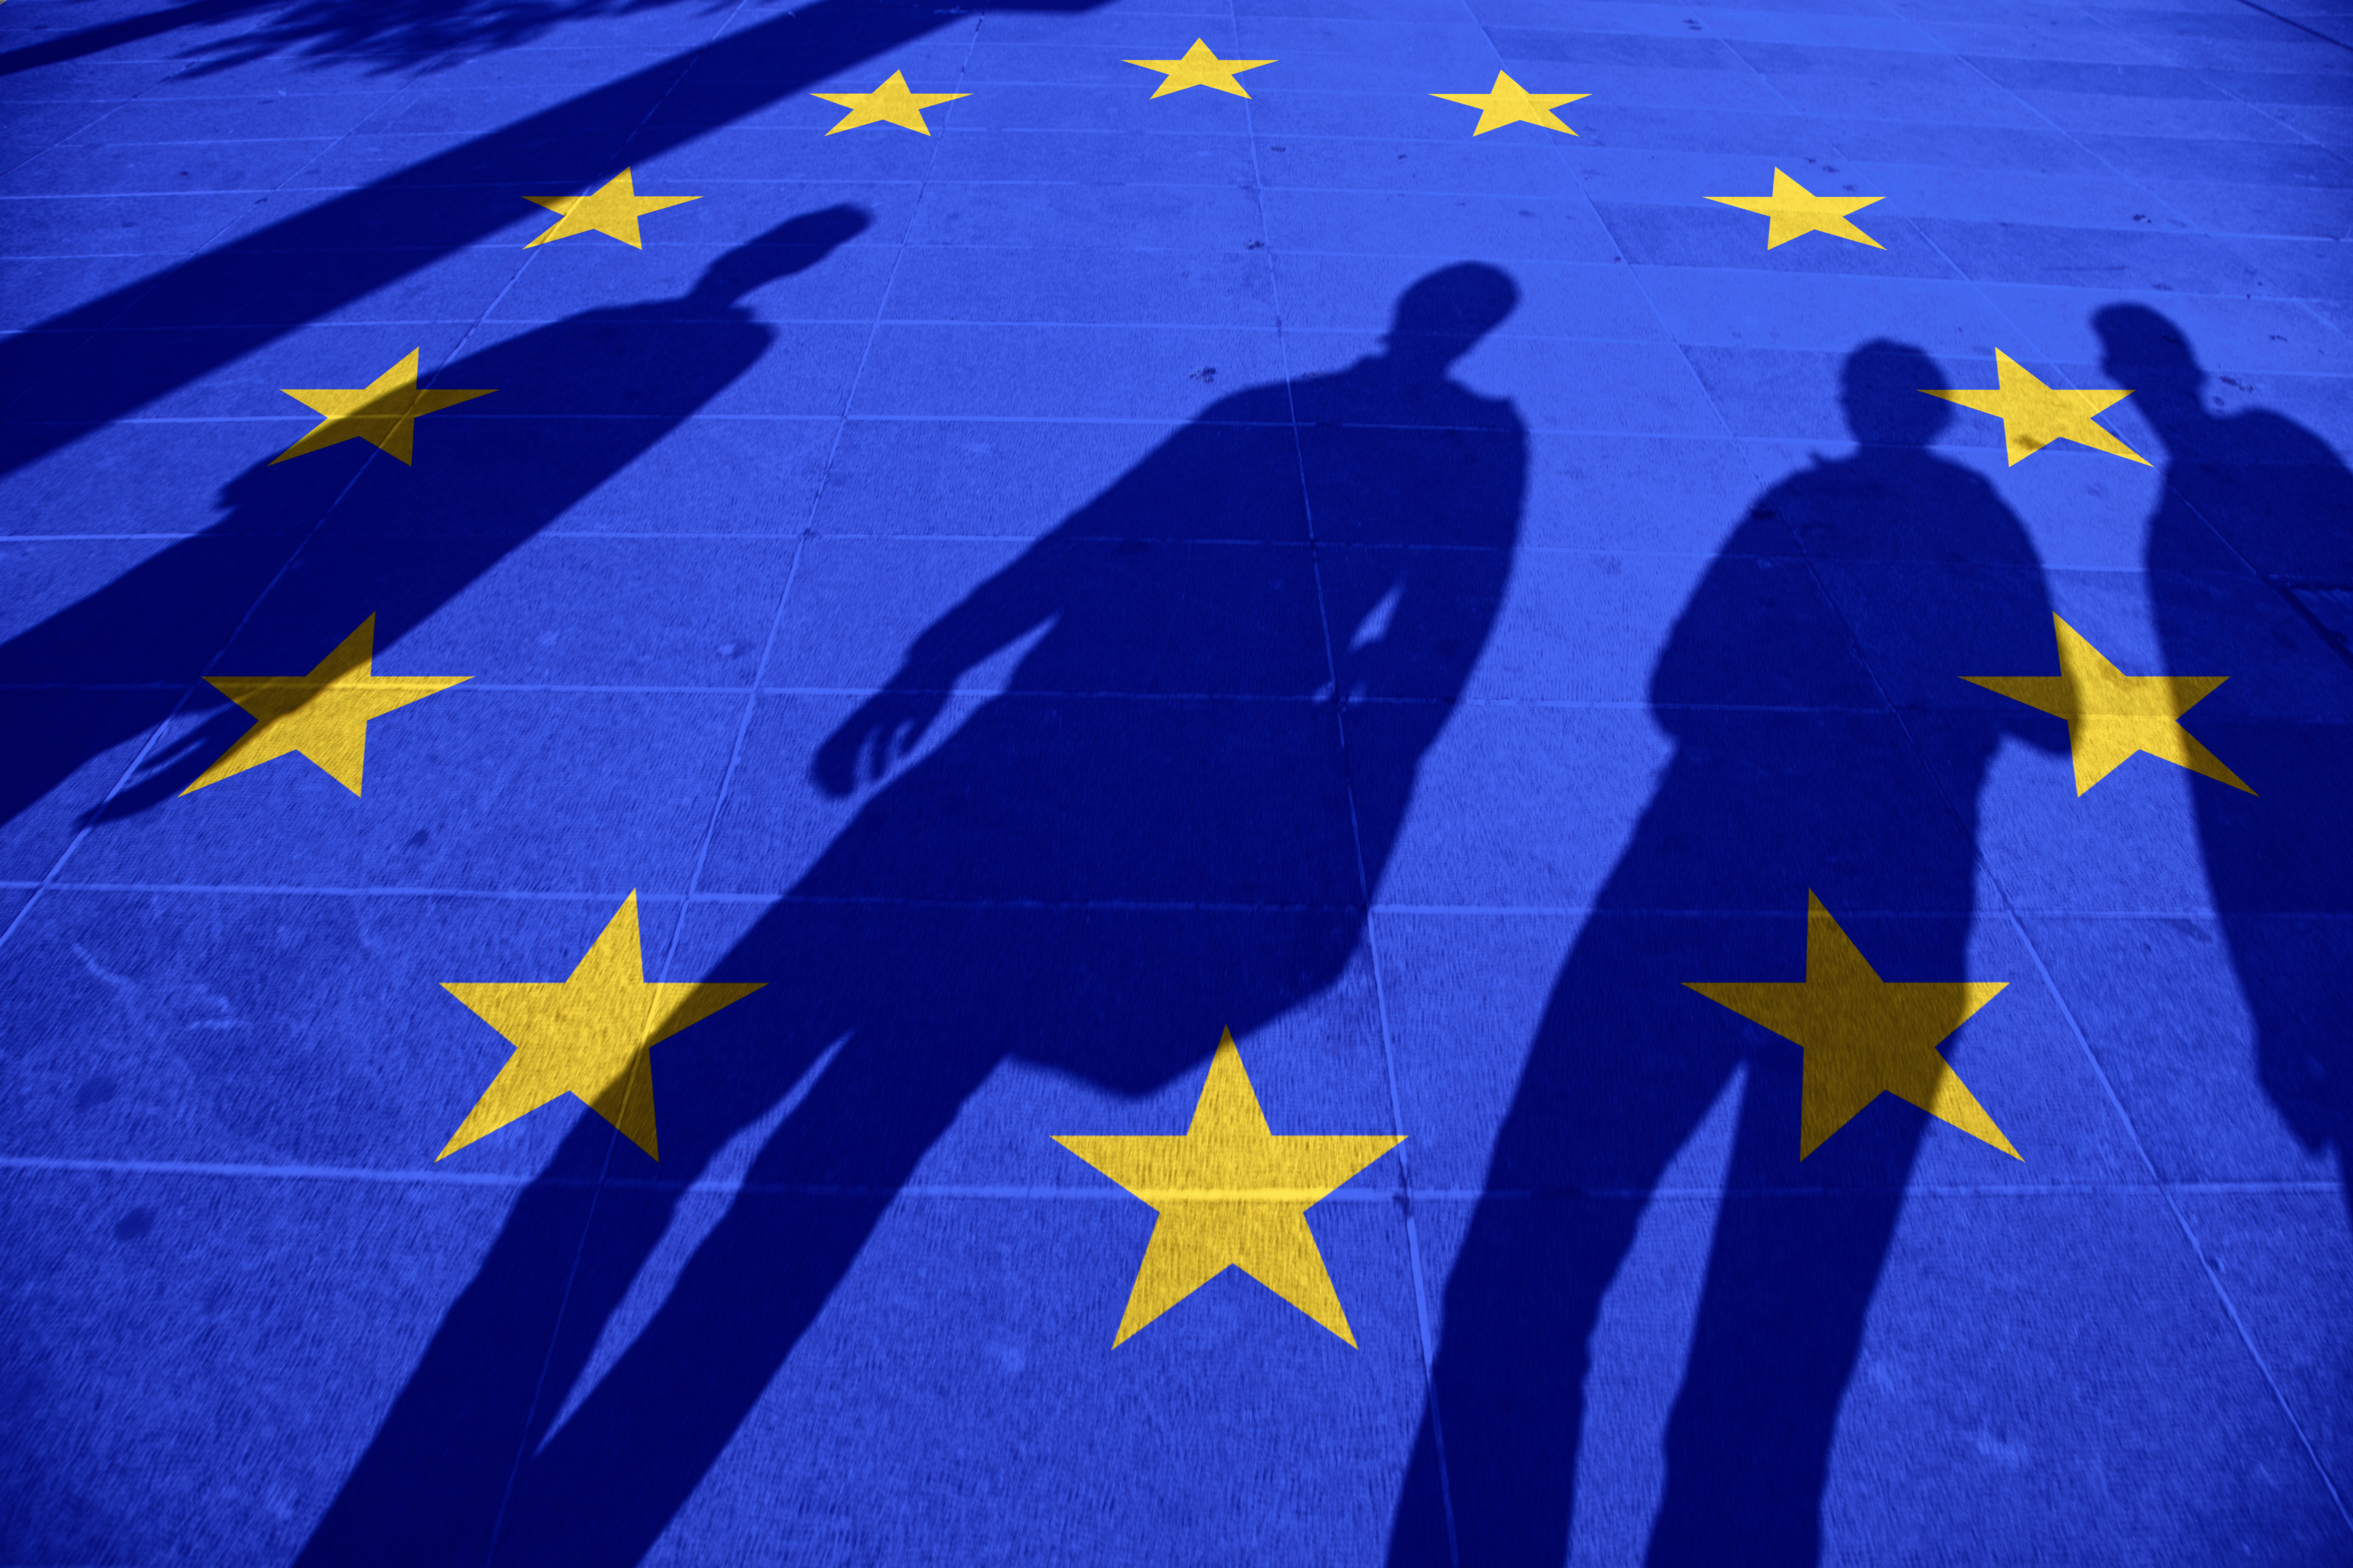 Blauer Boden mit im Kreis verlaufenden gelben Sterne, die Flagge der Europäischen Union symbolisierend, Schattenumrisse von vier Personen erkennbar